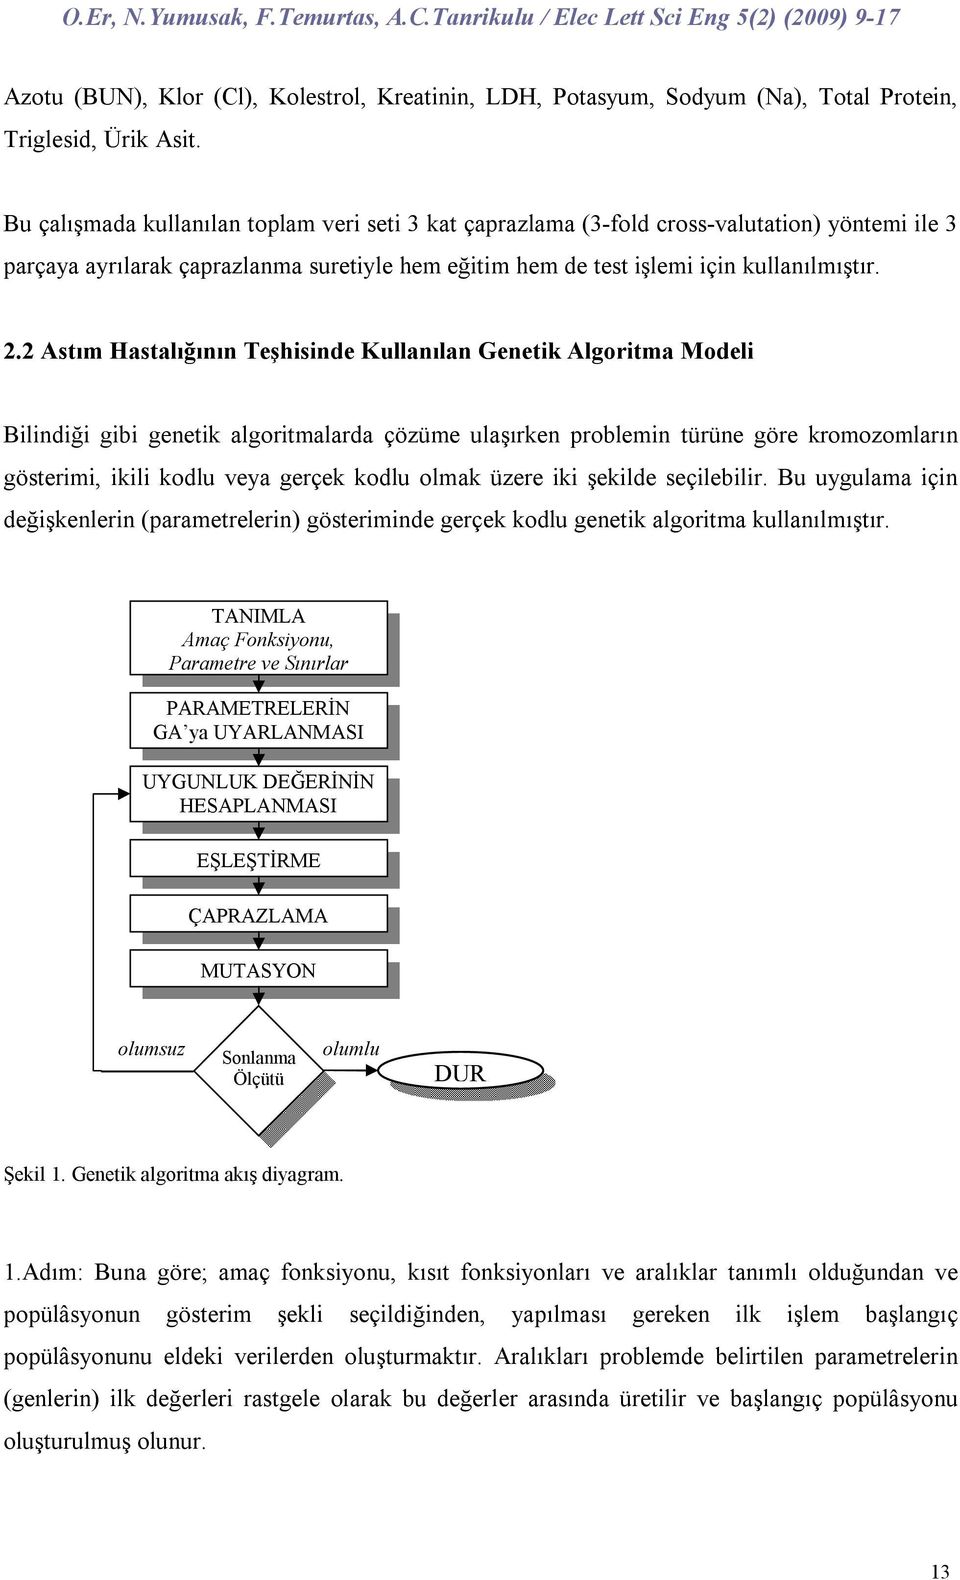 2 Astım Hastalığıı Teşhiside Kullaıla Geetik Algoritma Modeli Bilidiği gibi geetik algoritmalarda çözüme ulaşırke problemi türüe göre kromozomları gösterimi, ikili kodlu veya gerçek kodlu olmak üzere